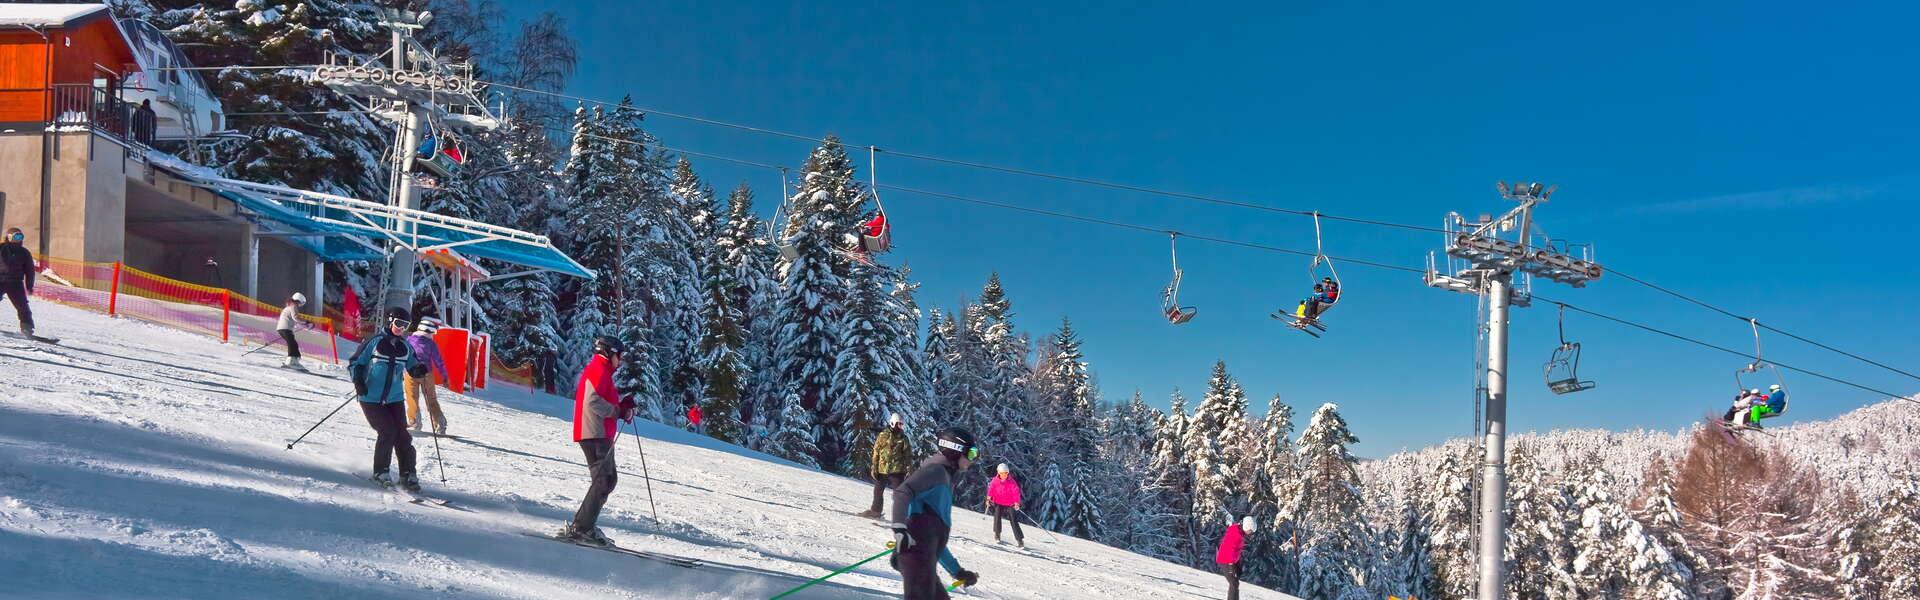 Bild: Stacje narciarskie w Małopolsce – każdy znajdzie odpowiednią dla siebie